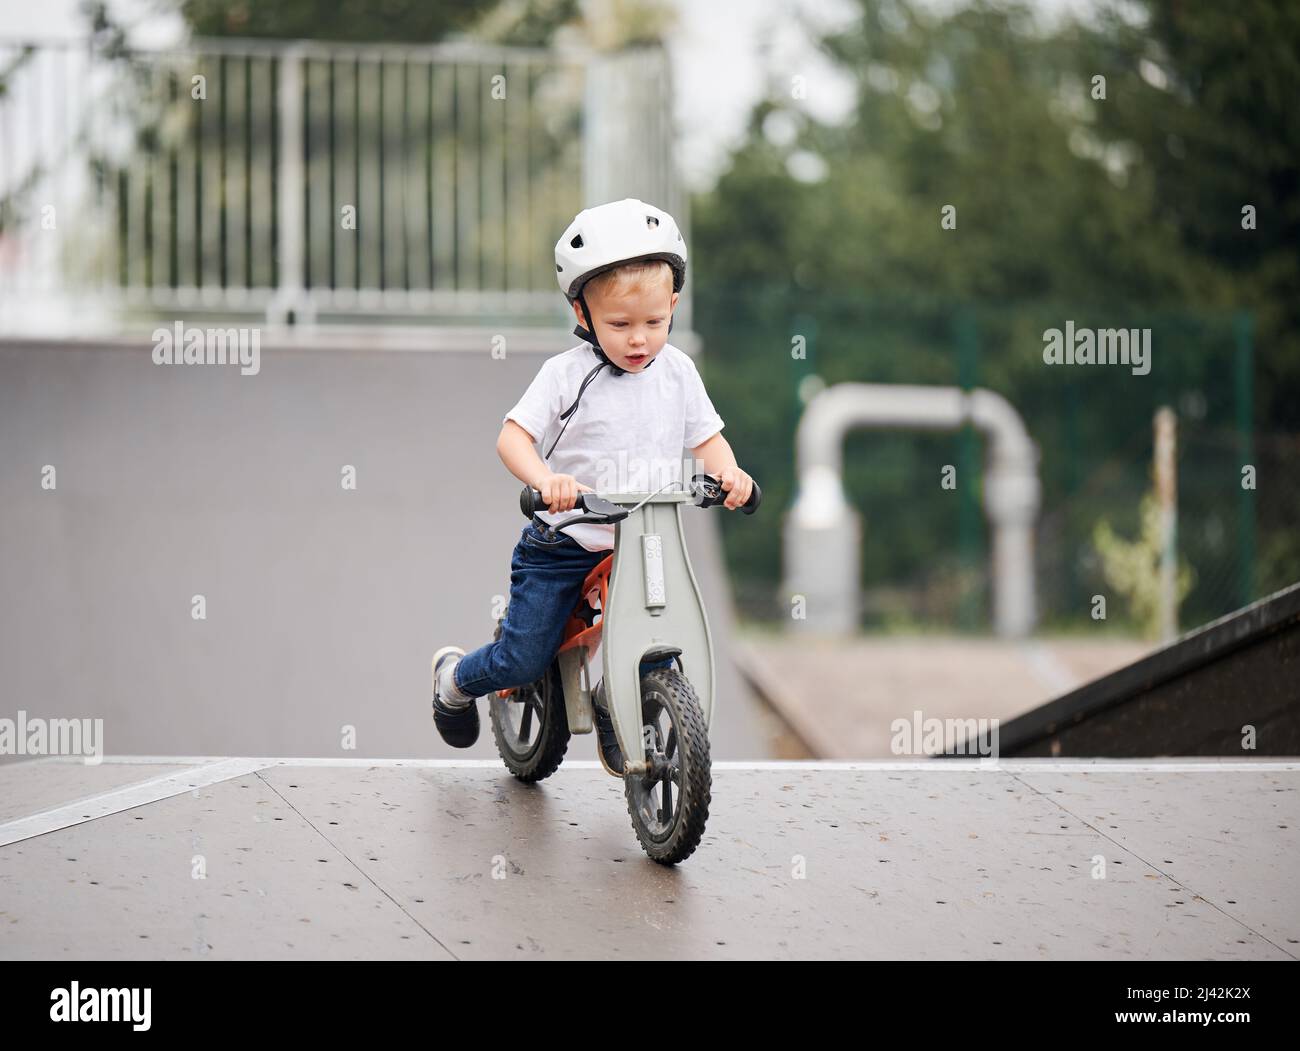 Bicicletta Balance per bambini. Bambino maschio in casco imparando a correre in bicicletta al parco skate. Foto Stock